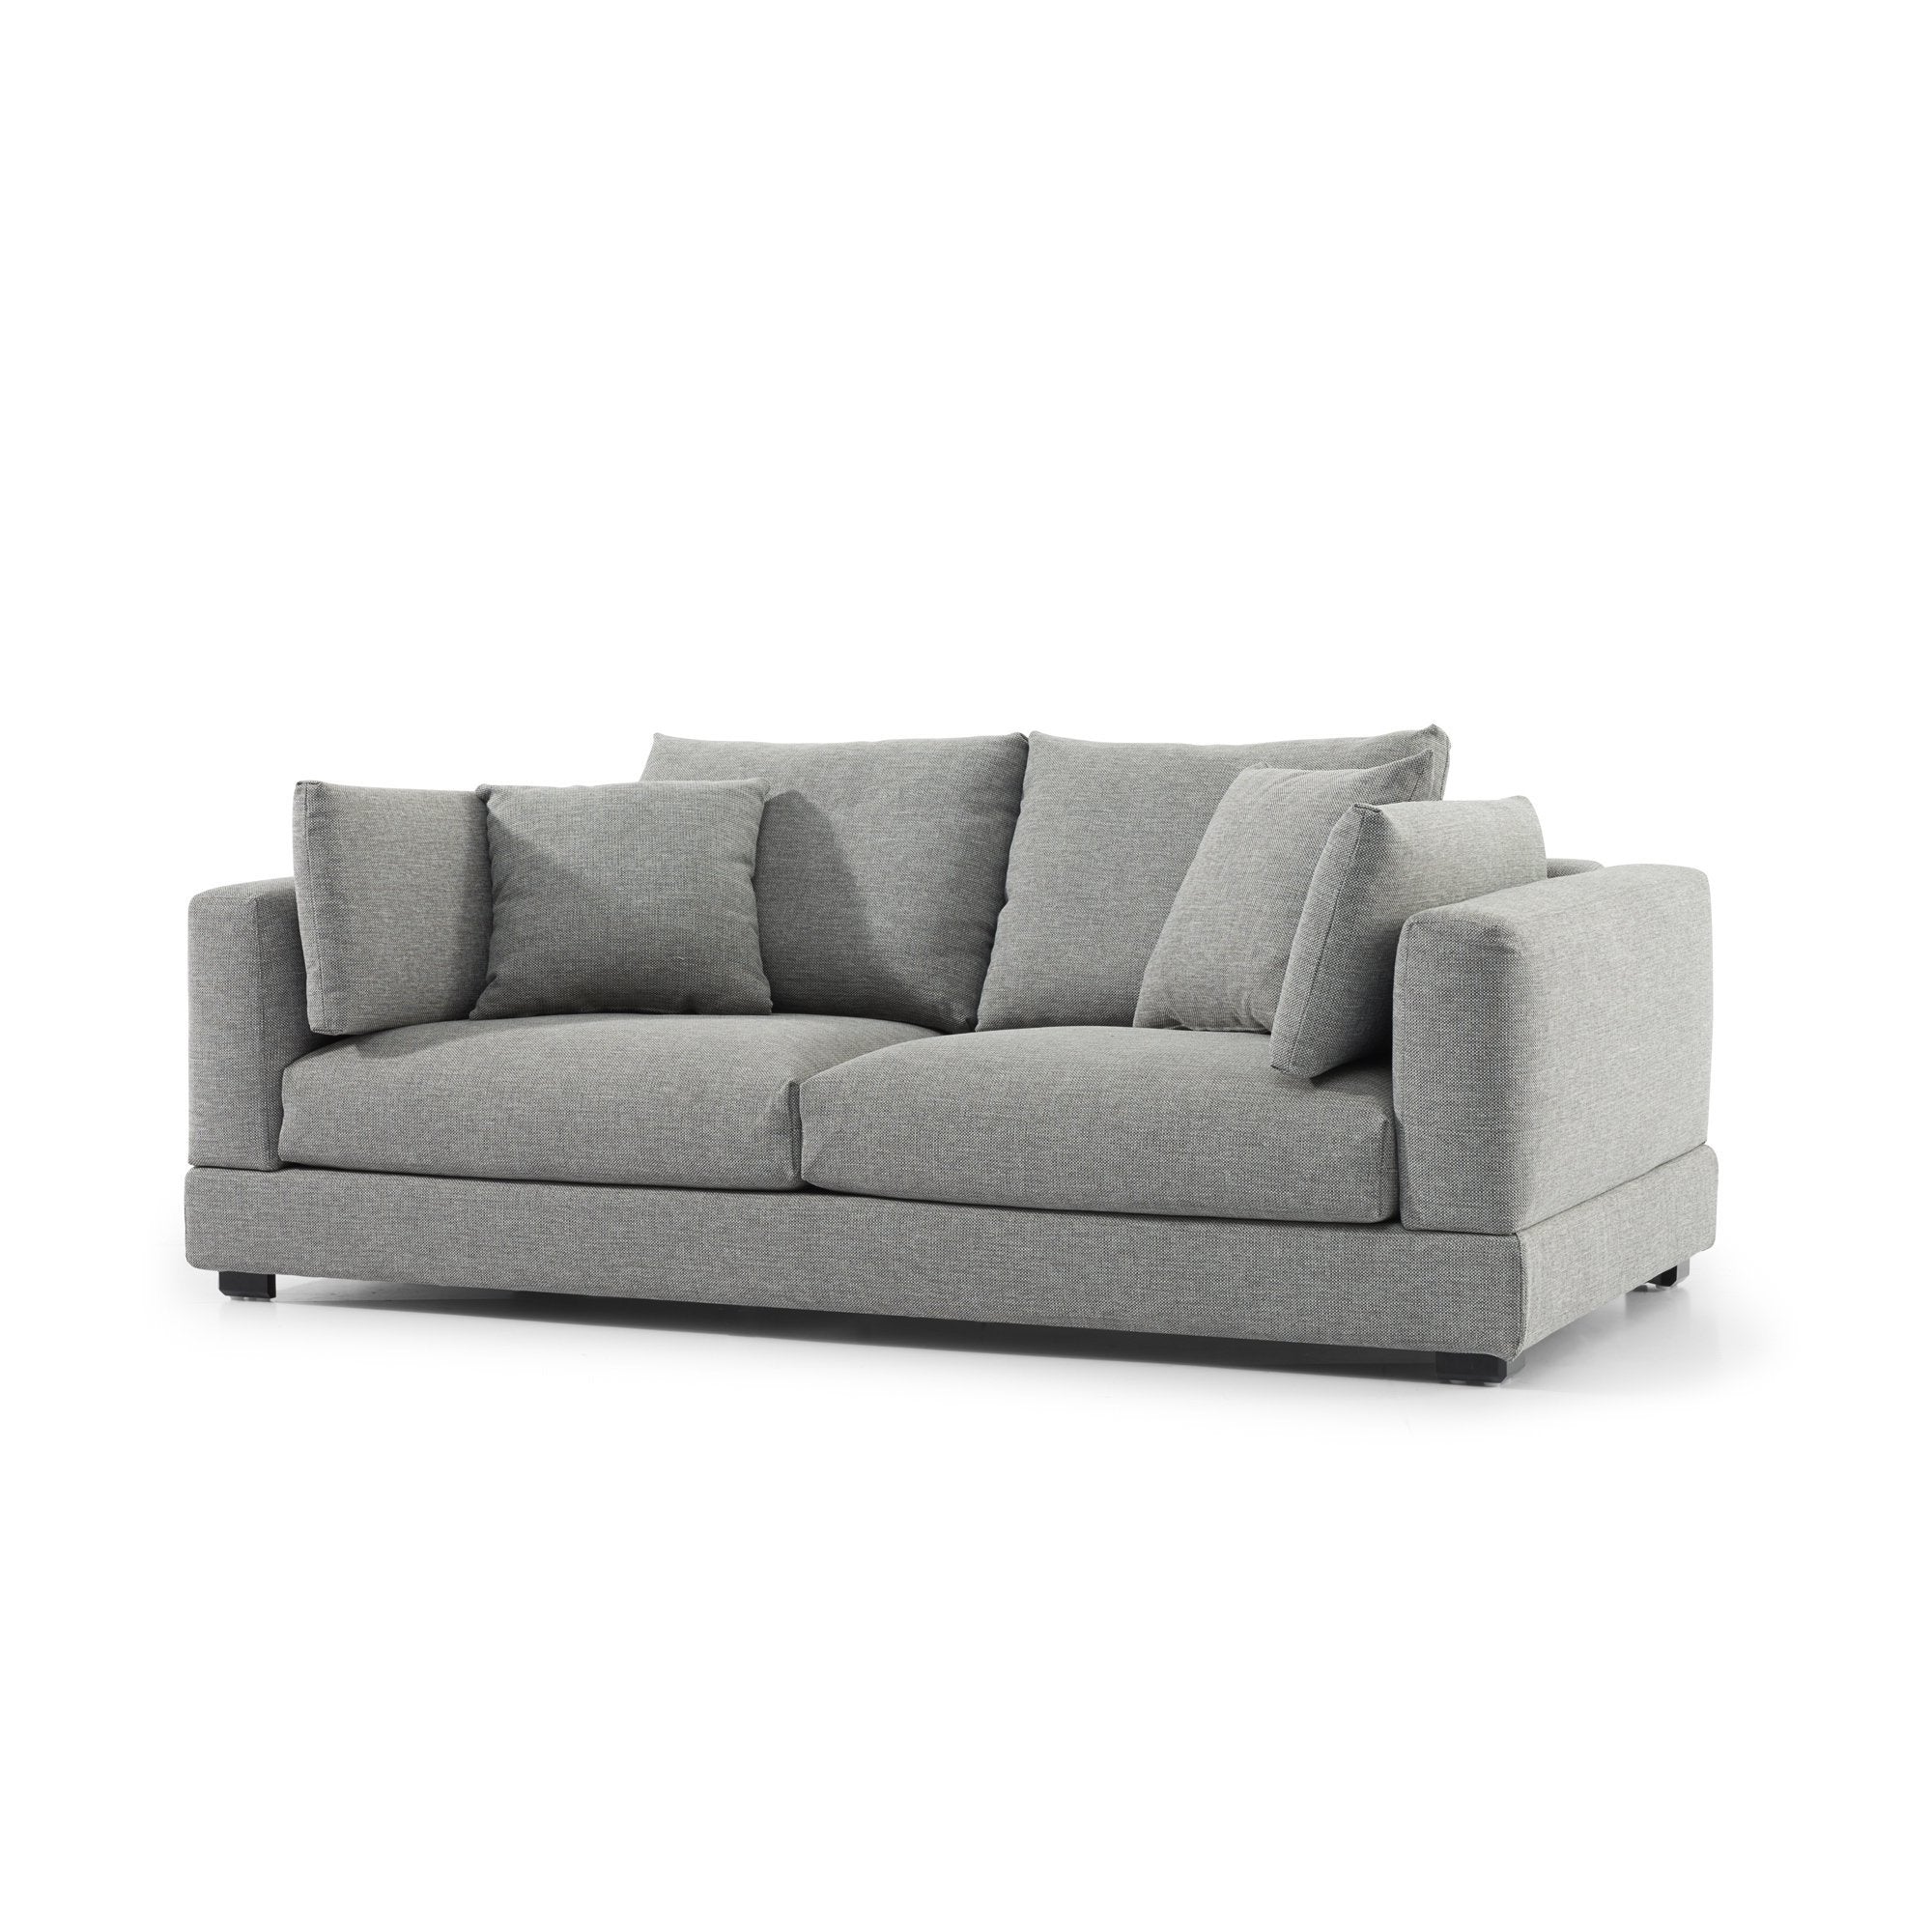 Ava 3 Seater Sofa - Graphite Grey